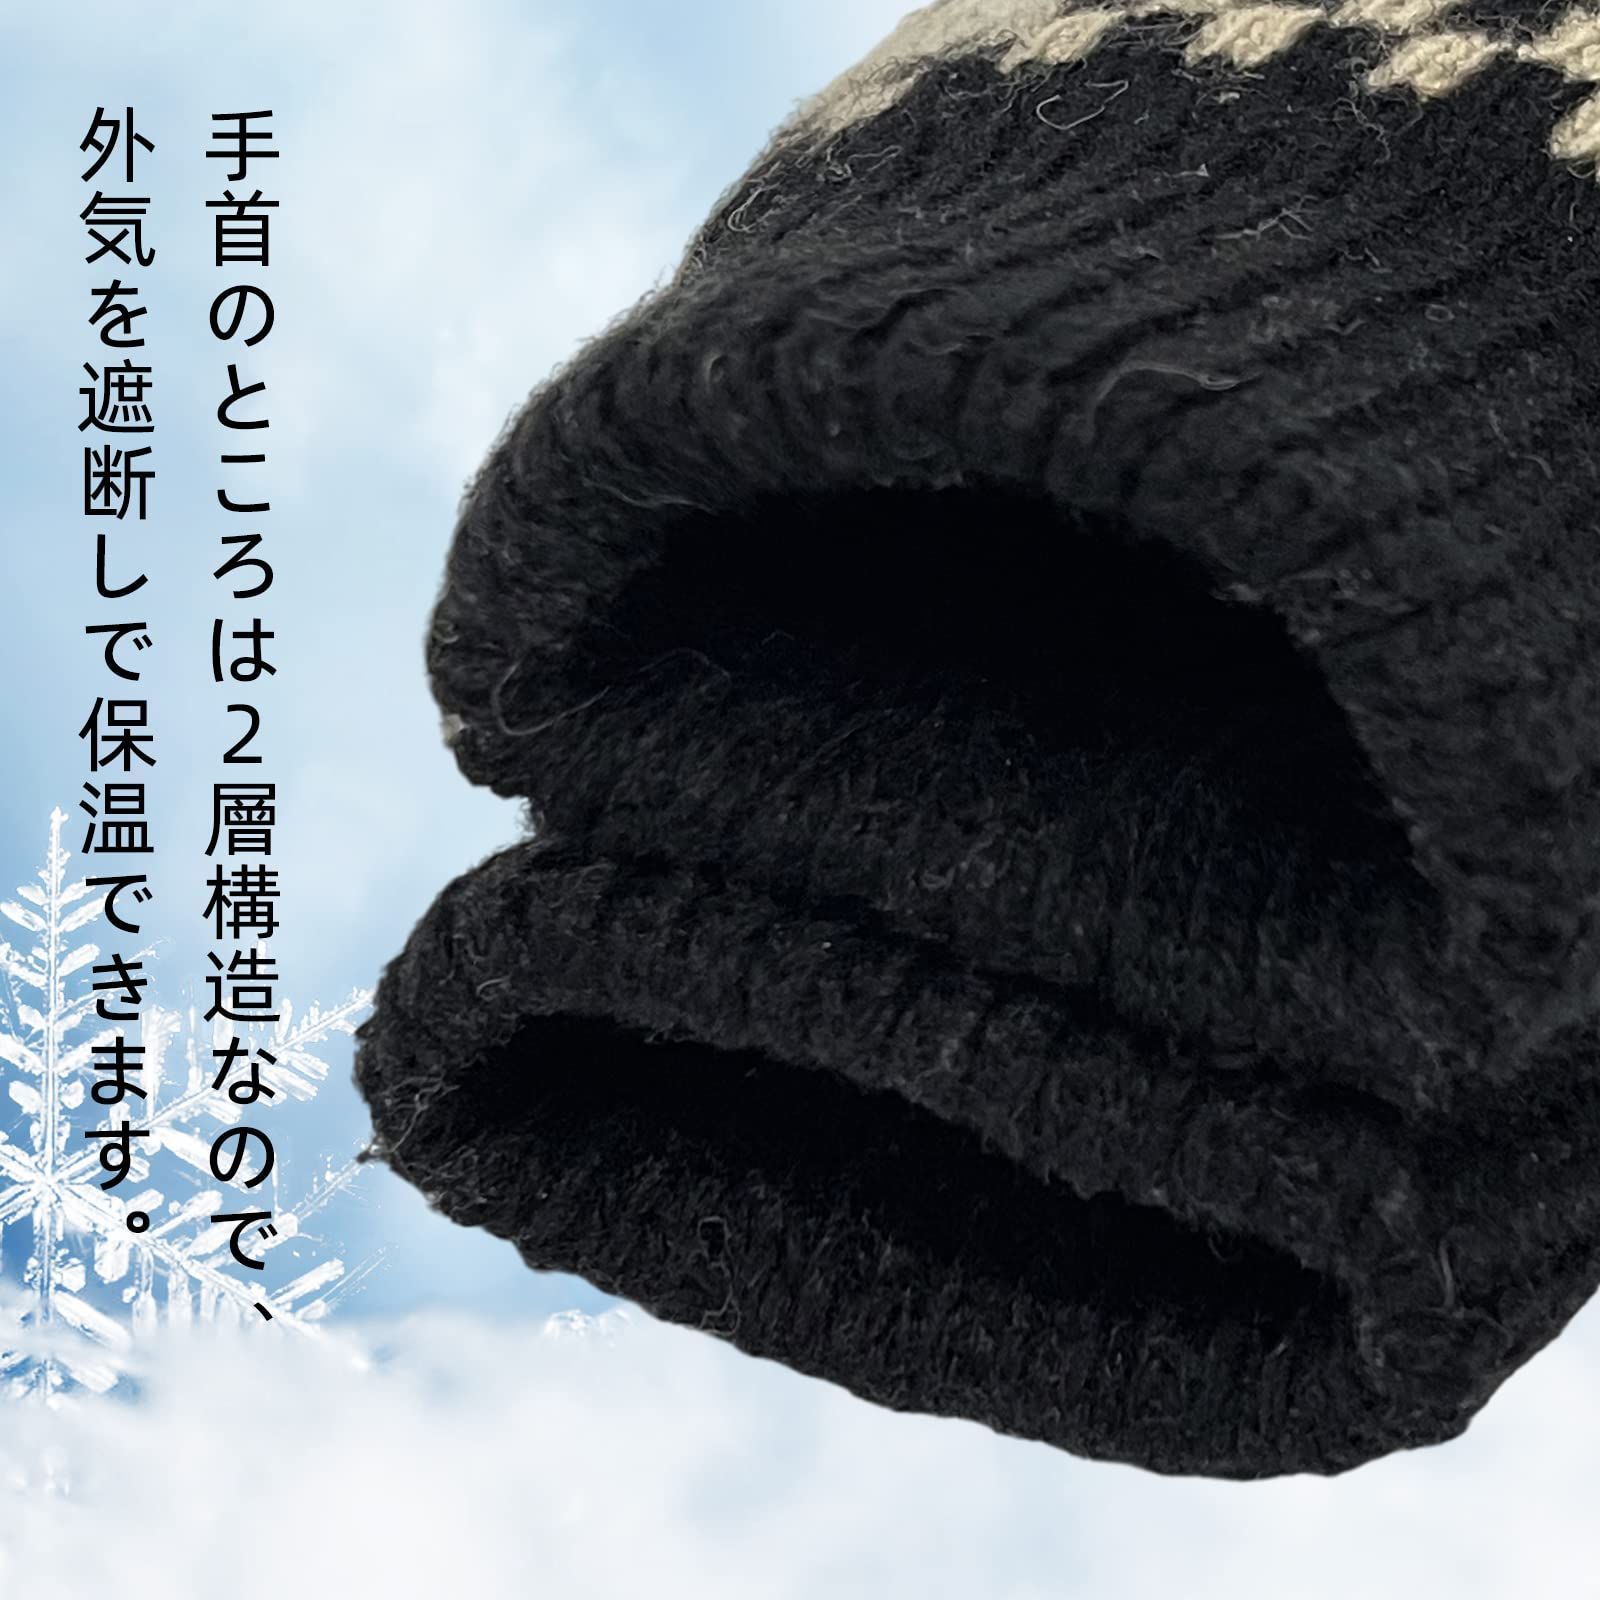 色: ブラック】夢の物 手袋 防寒 メンズ ニット 2層保温構造